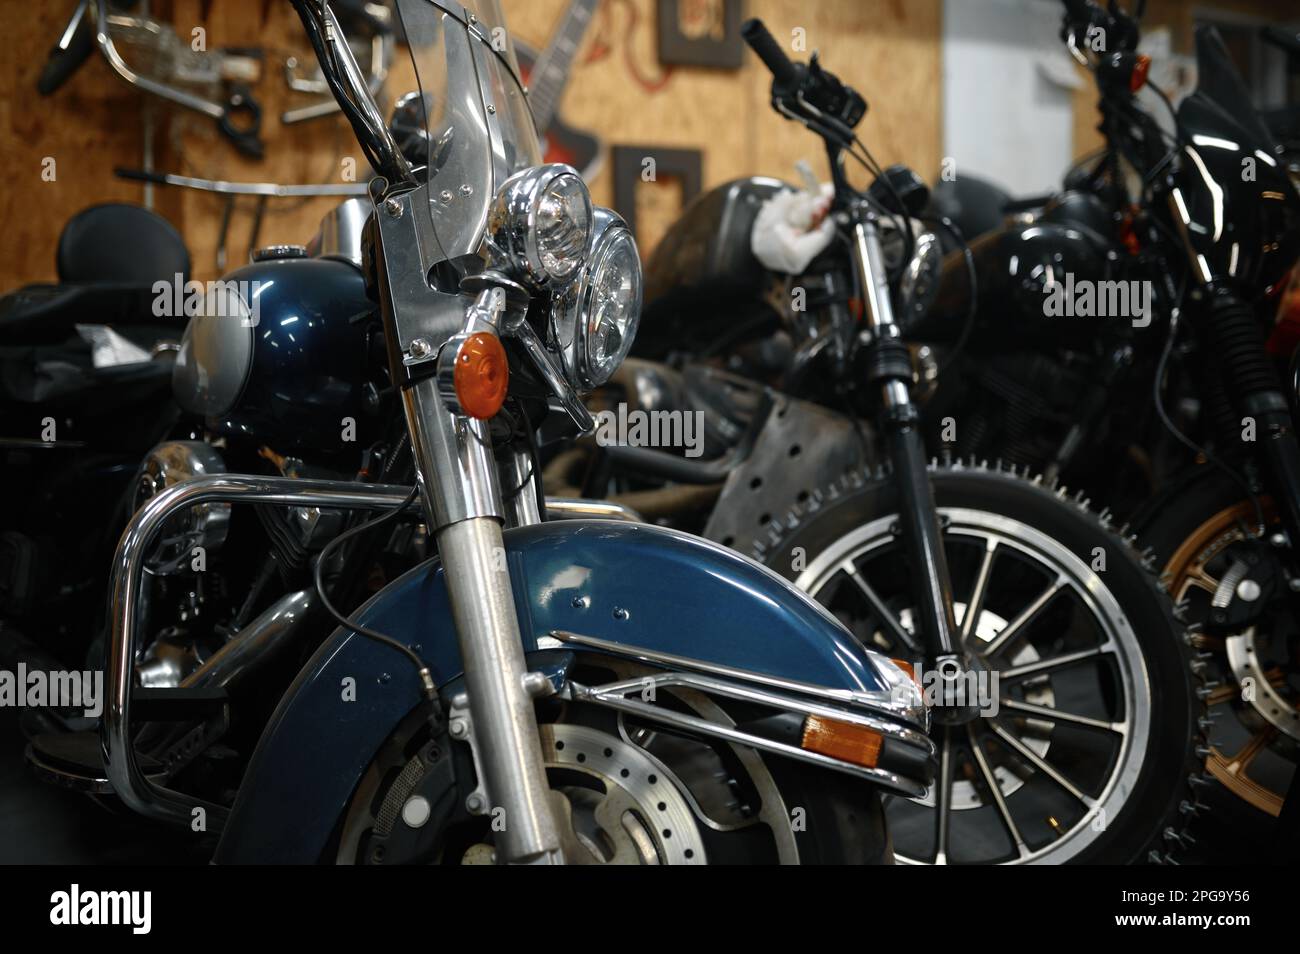 Las motocicletas van en la tienda de garaje, motos reparadas listas para vender Foto de stock